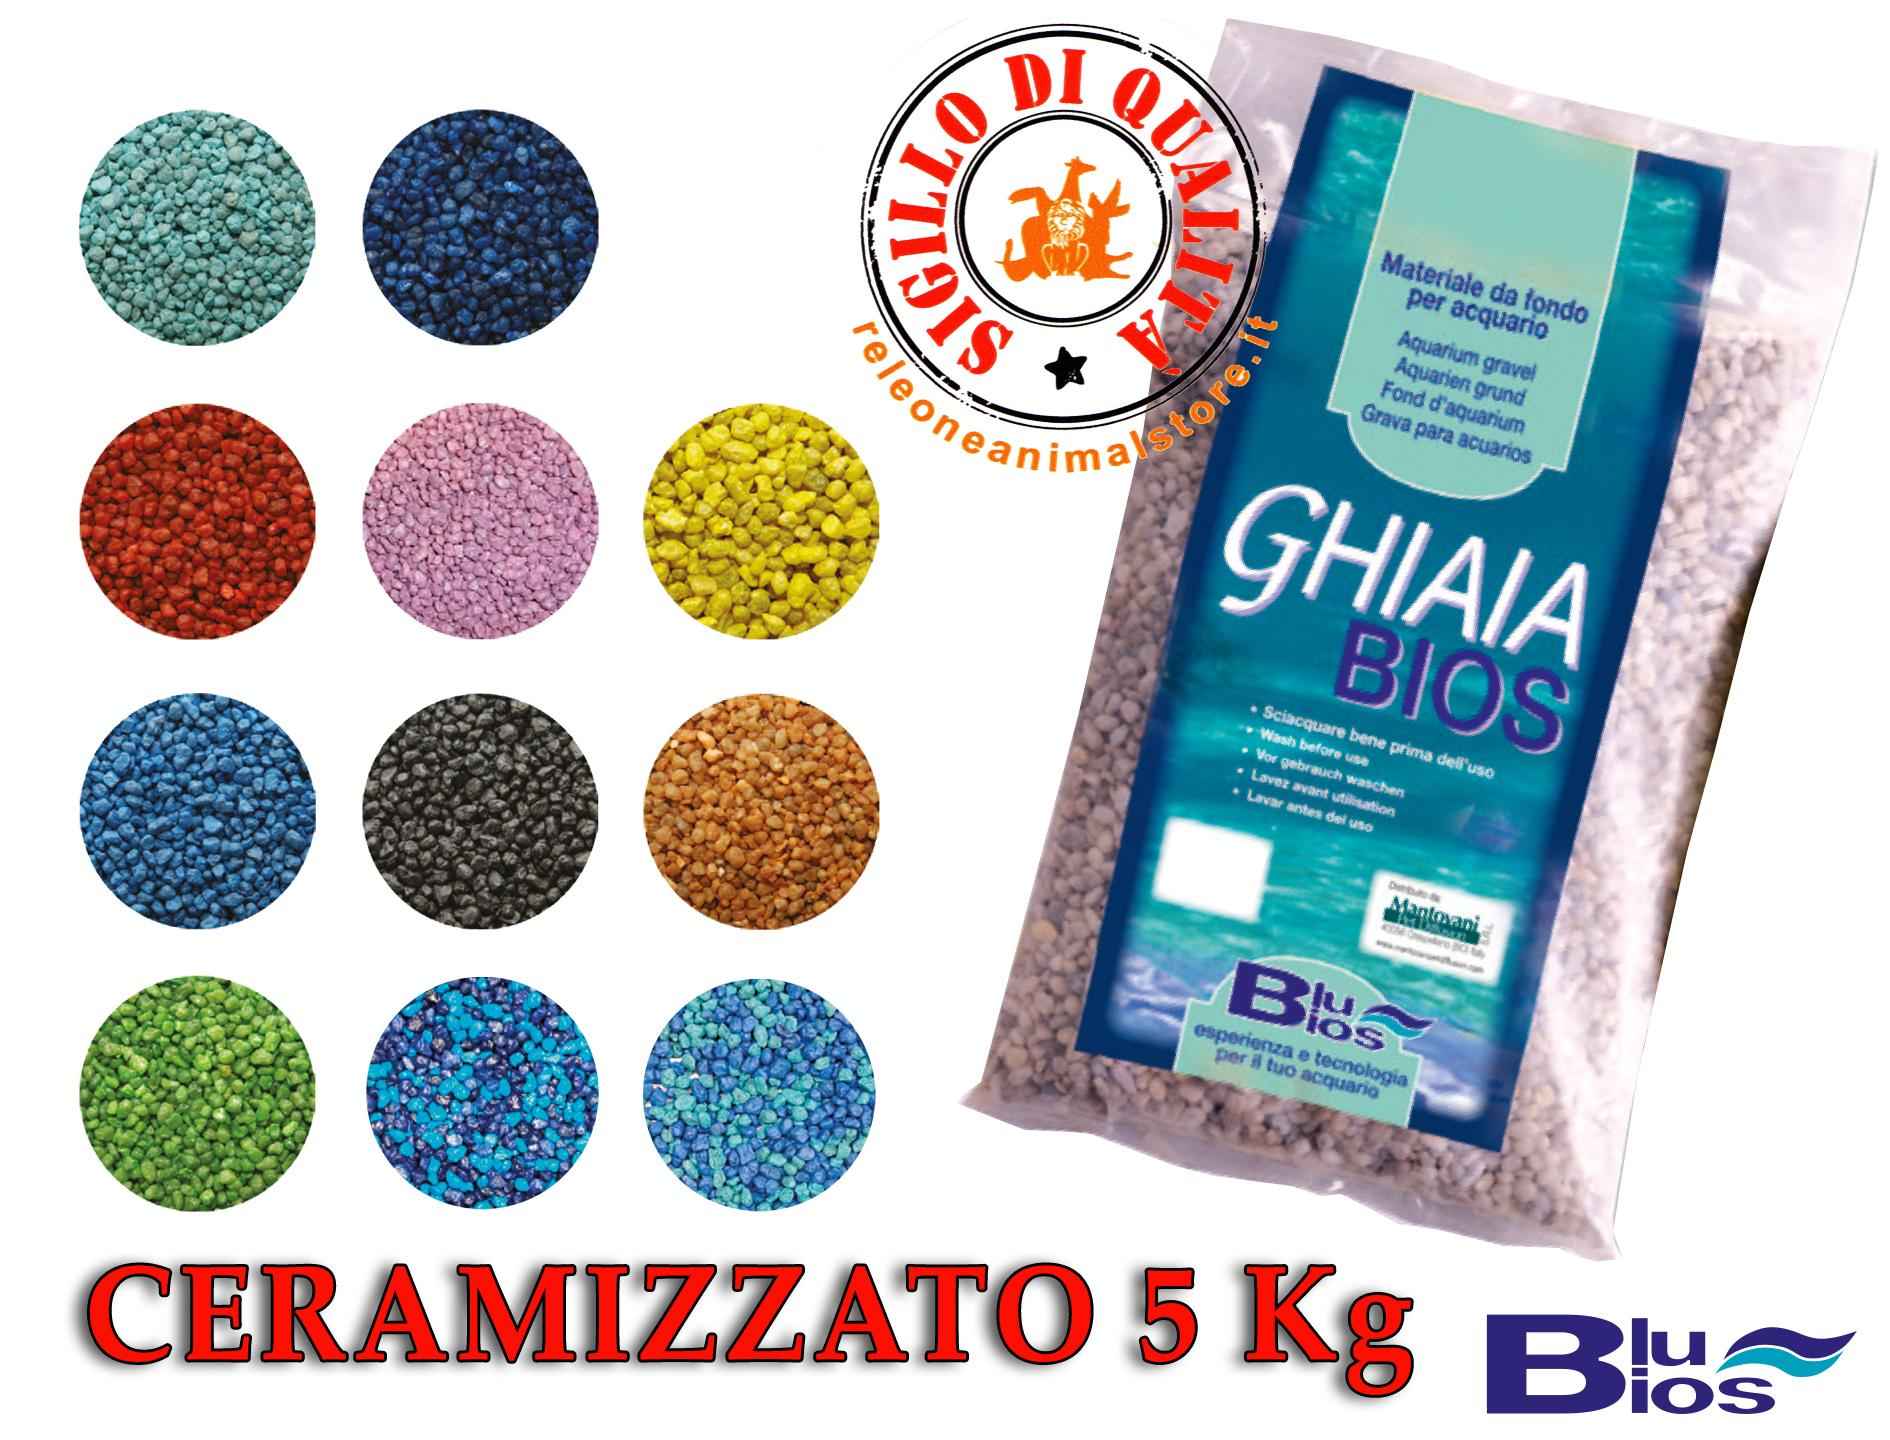 Sabbia e Ghiaia - releoneanimalstore - Sabbia Ghiaia Ceramizzato Blu Bios  Fondo per acquari Colorata 5 Kg